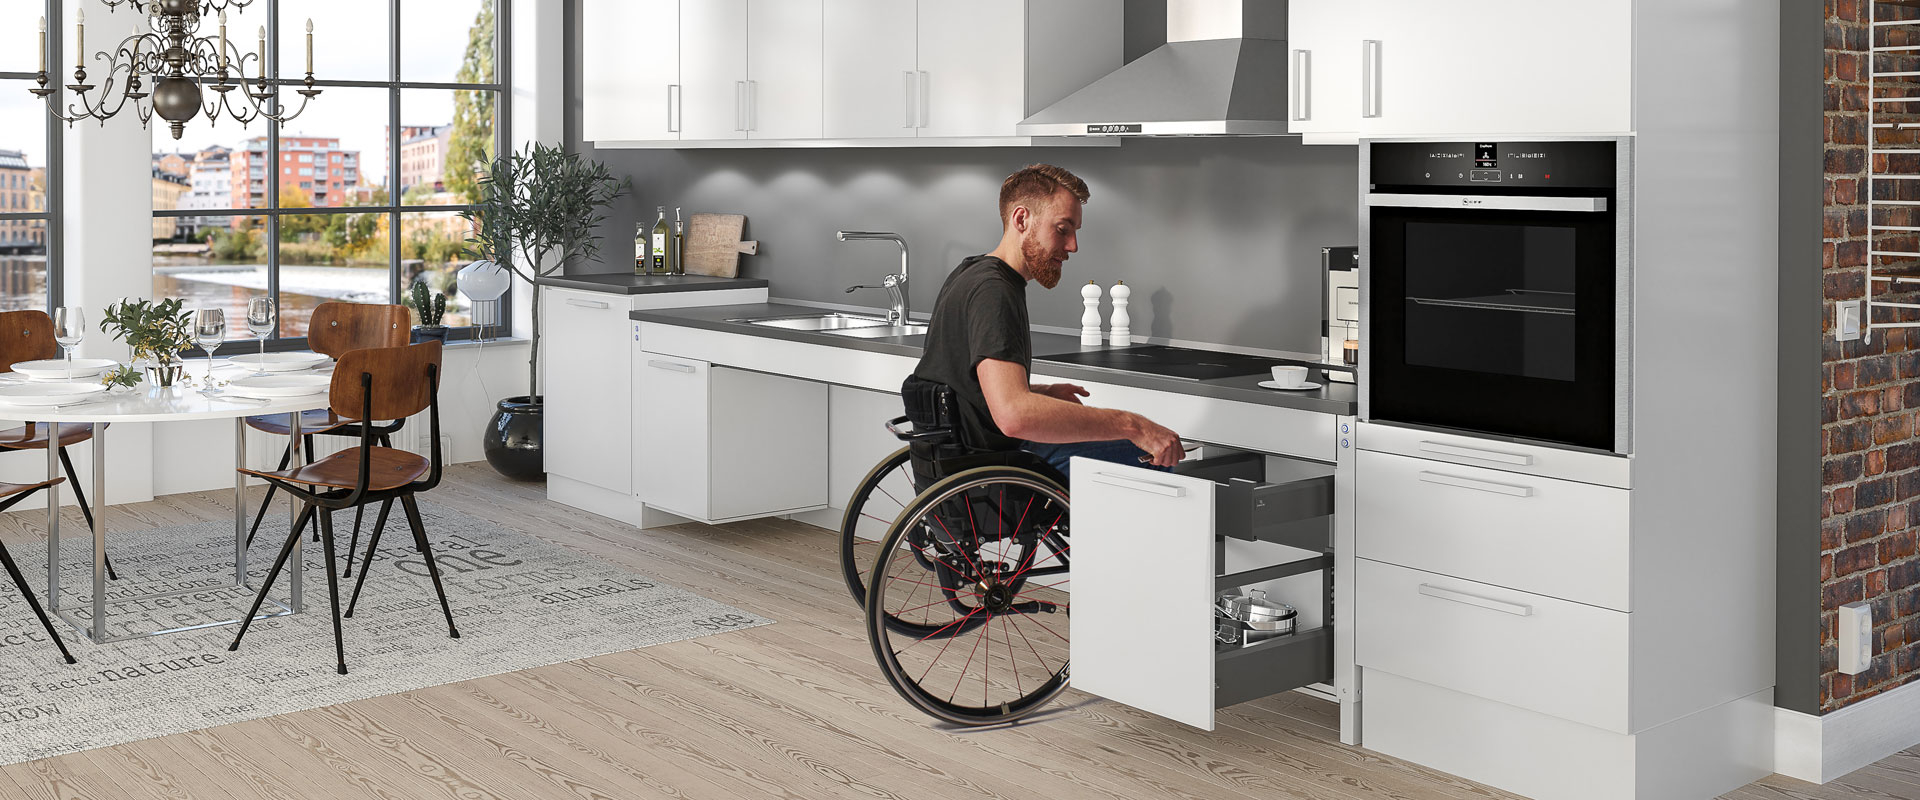 Conseils pour planifier une cuisine PMR accessible aux utilisateurs de fauteuil roulant